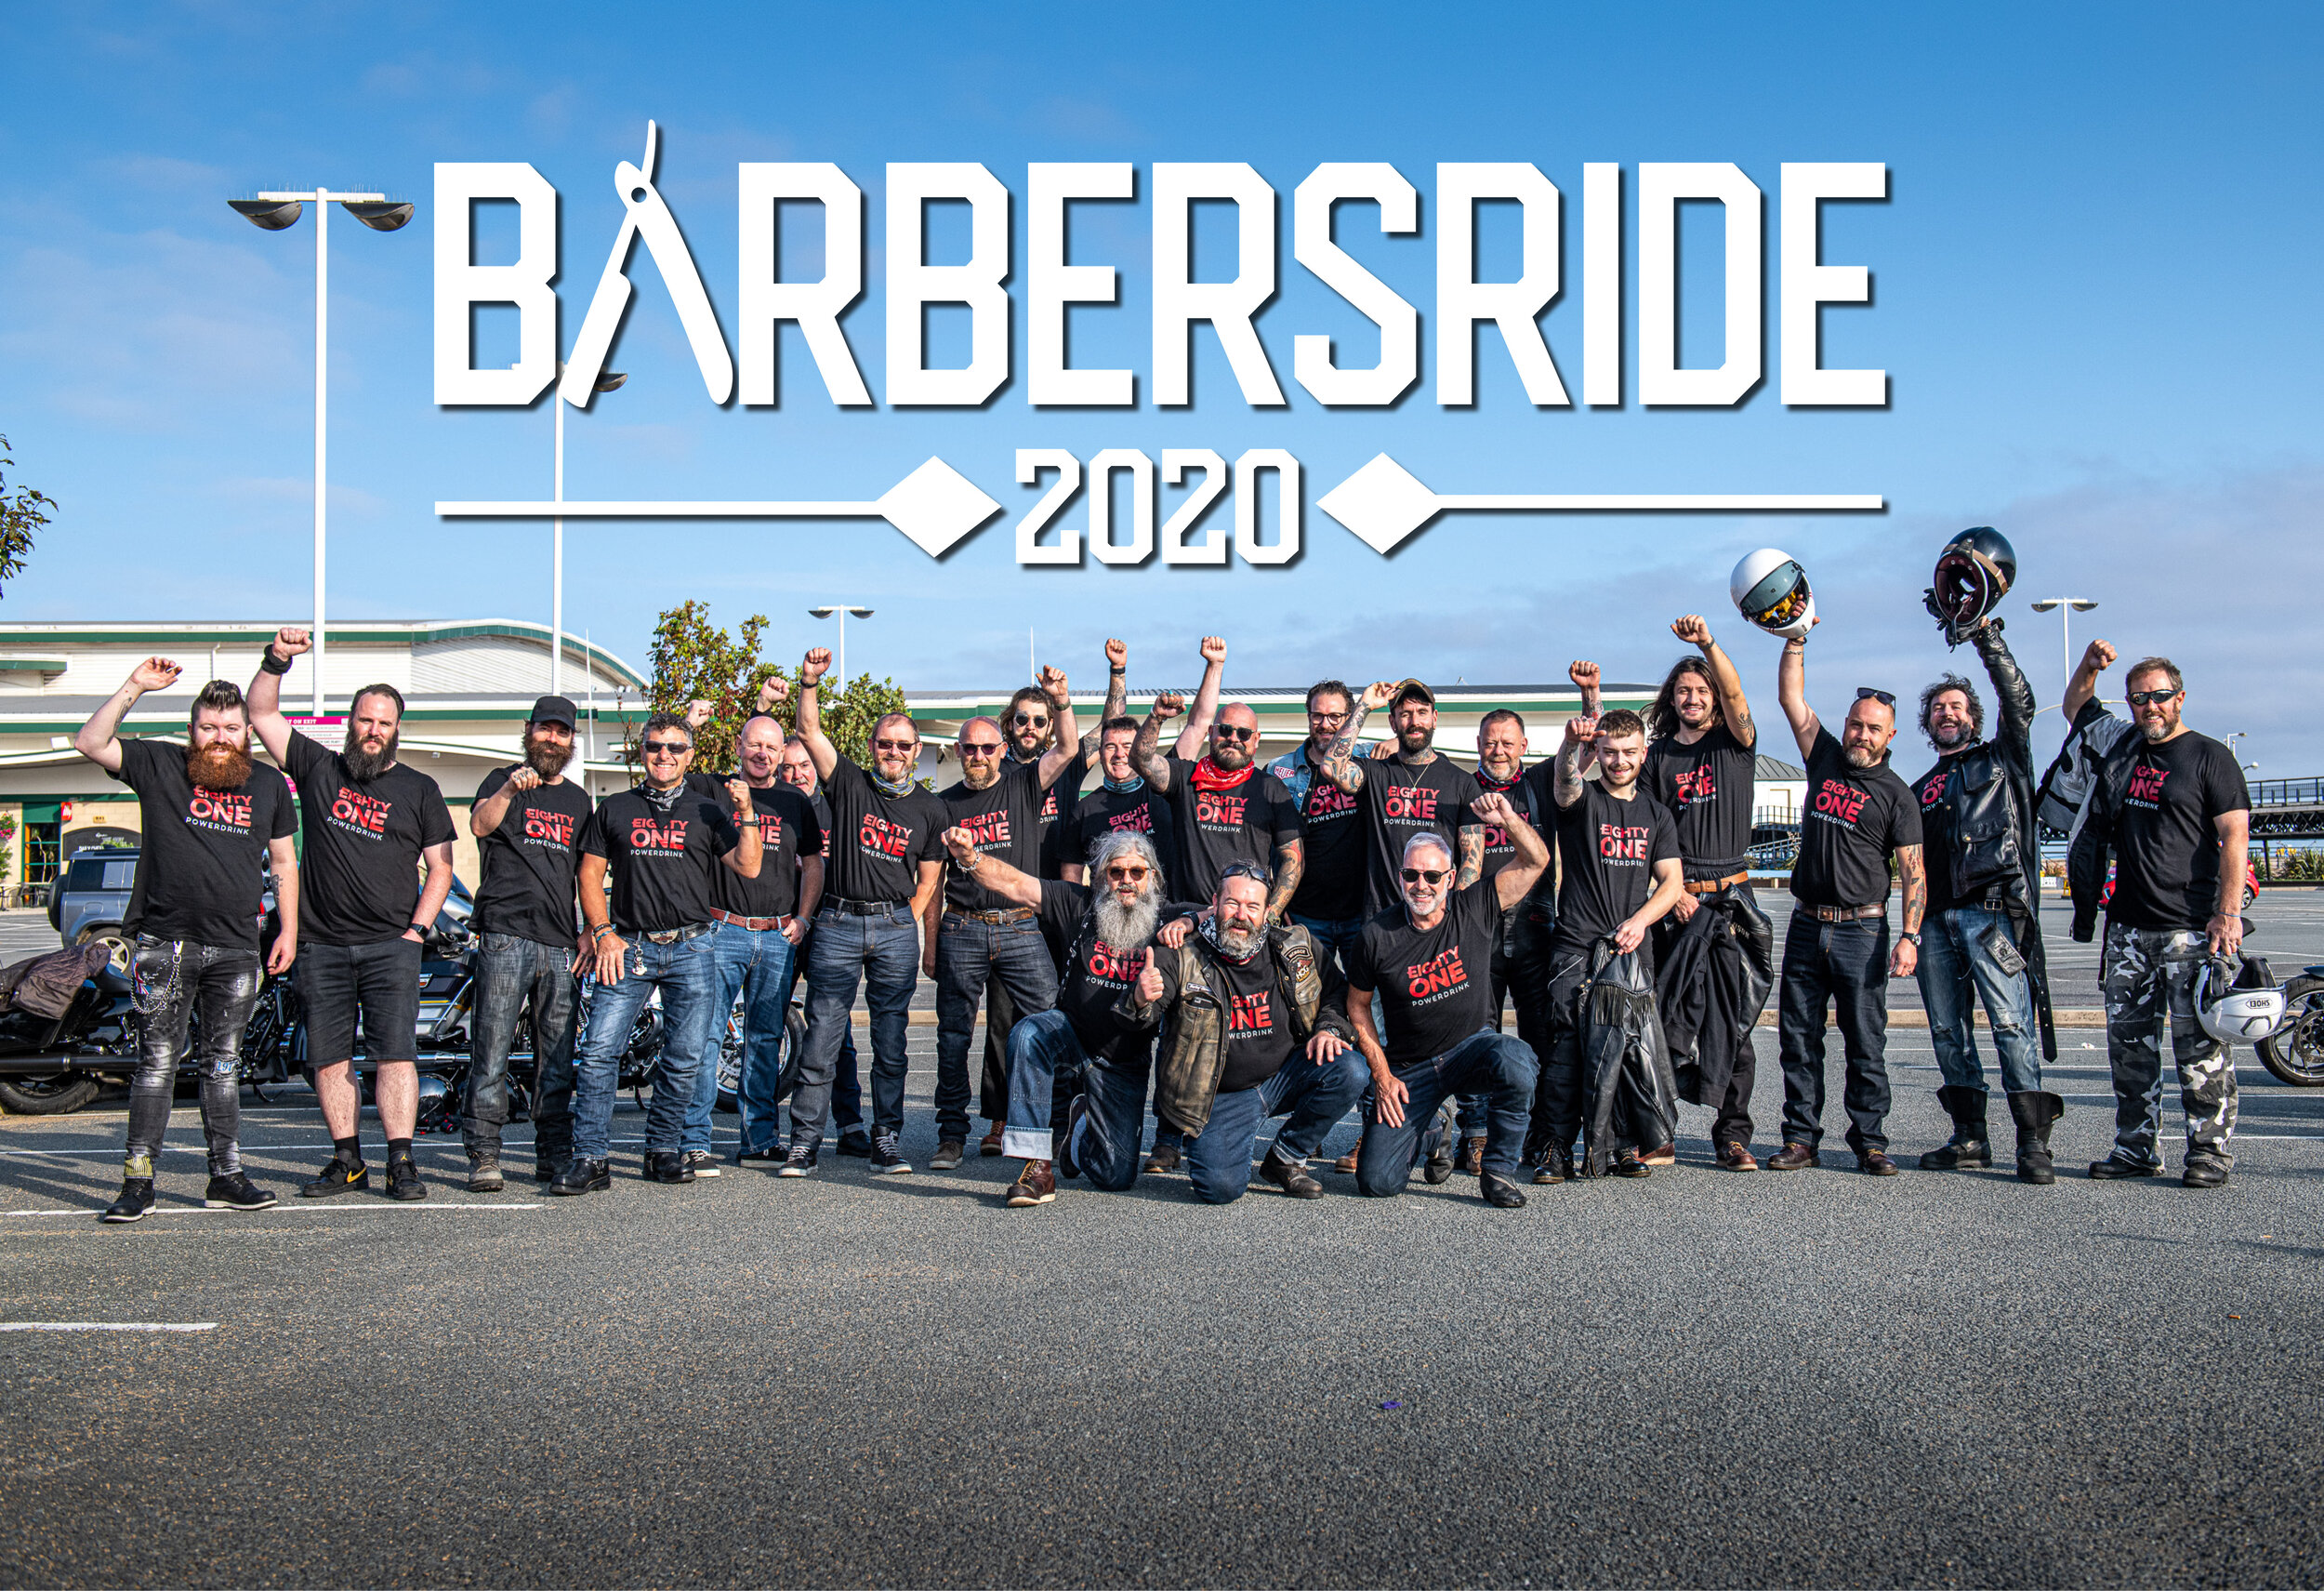 Barbersride_2020_day_1_EightyOne.jpg